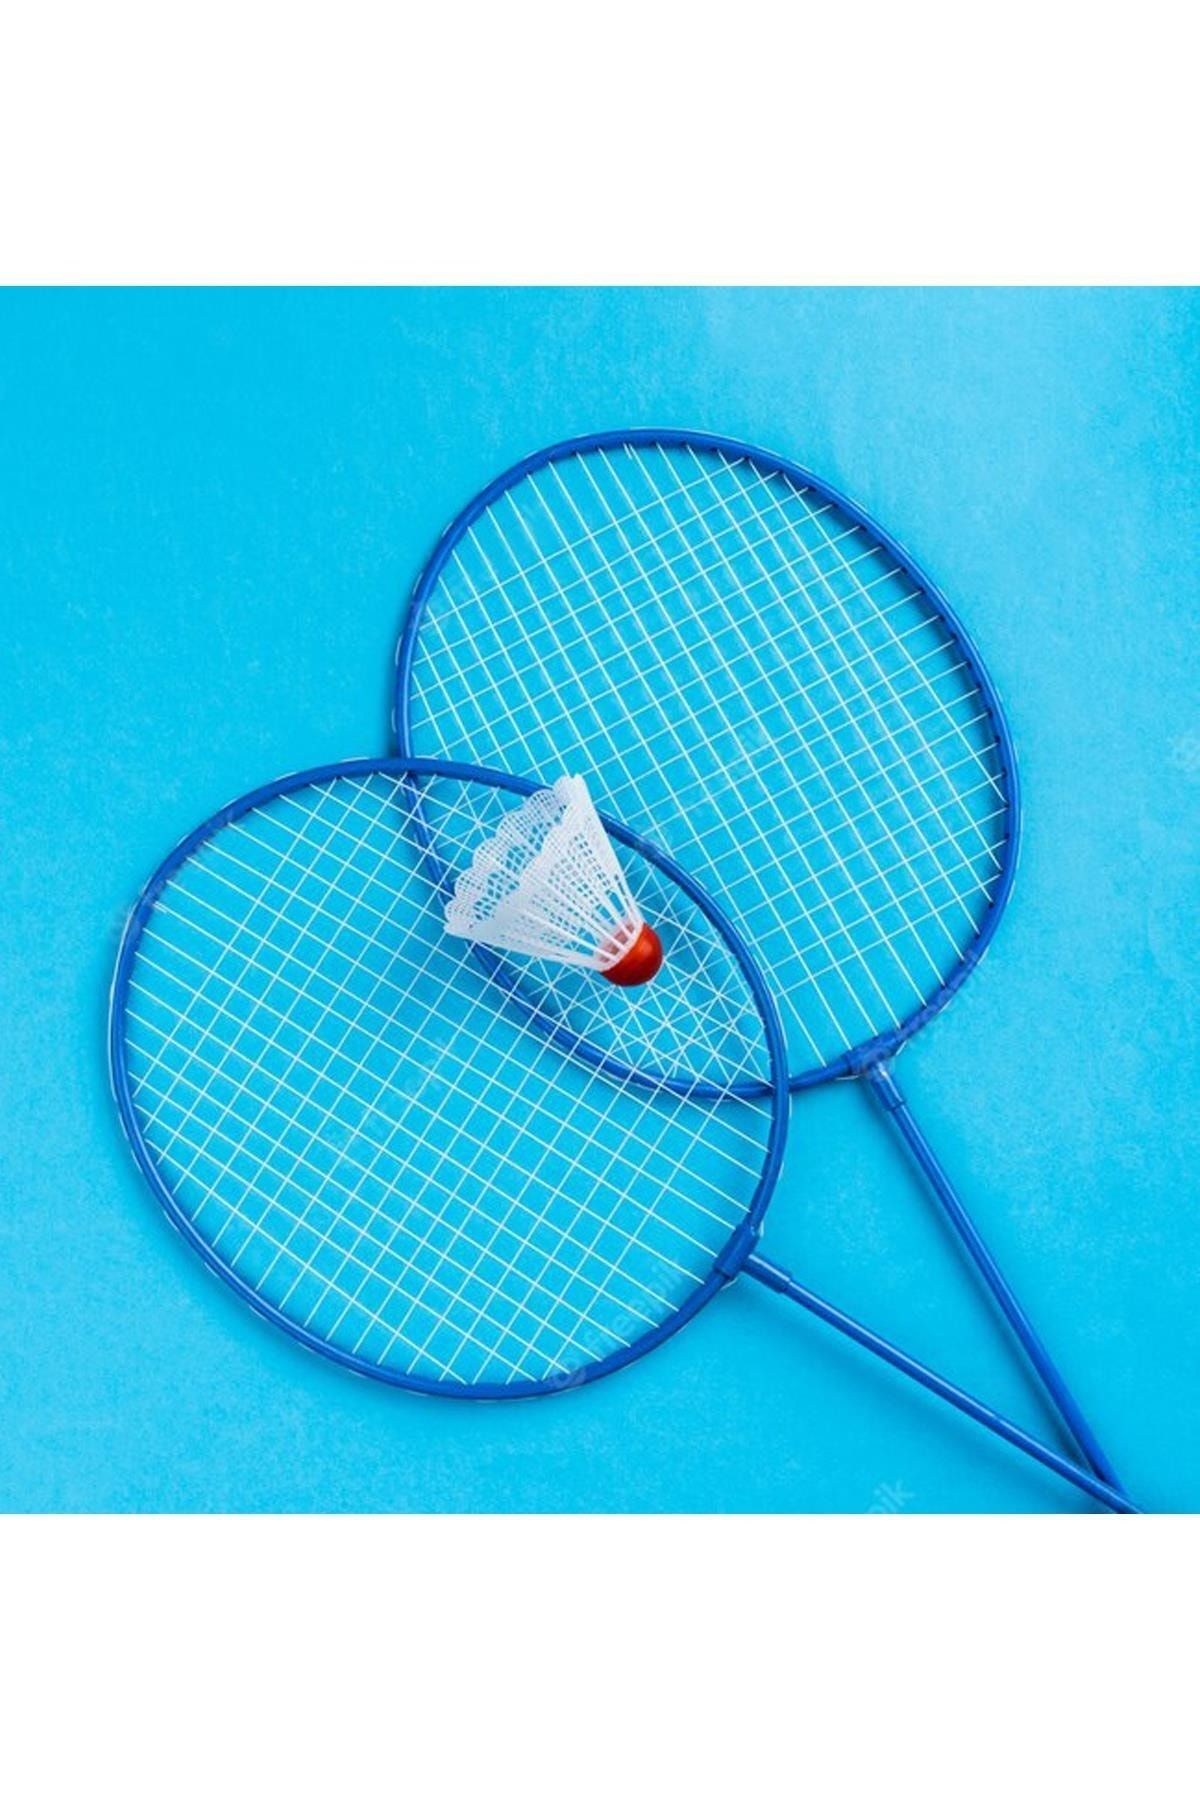 Hsport Mavi A Kalite Unisex Badminton Raketi Iç-dış Saha Uygun Çantalı 2 Adet Ve Top Hediyeli